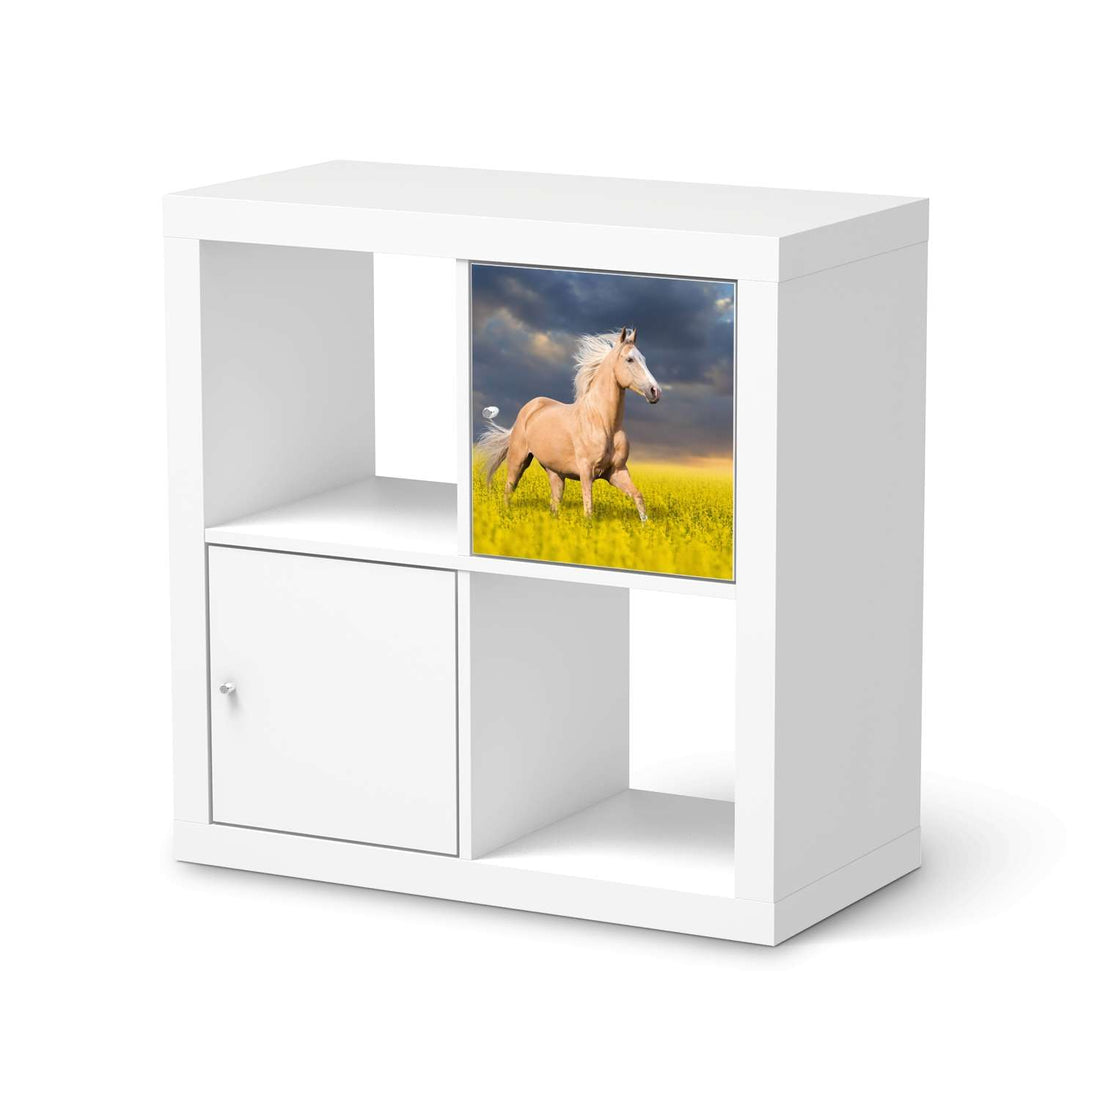 Selbstklebende Folie Wildpferd - IKEA Kallax Regal 1 Türe  - weiss